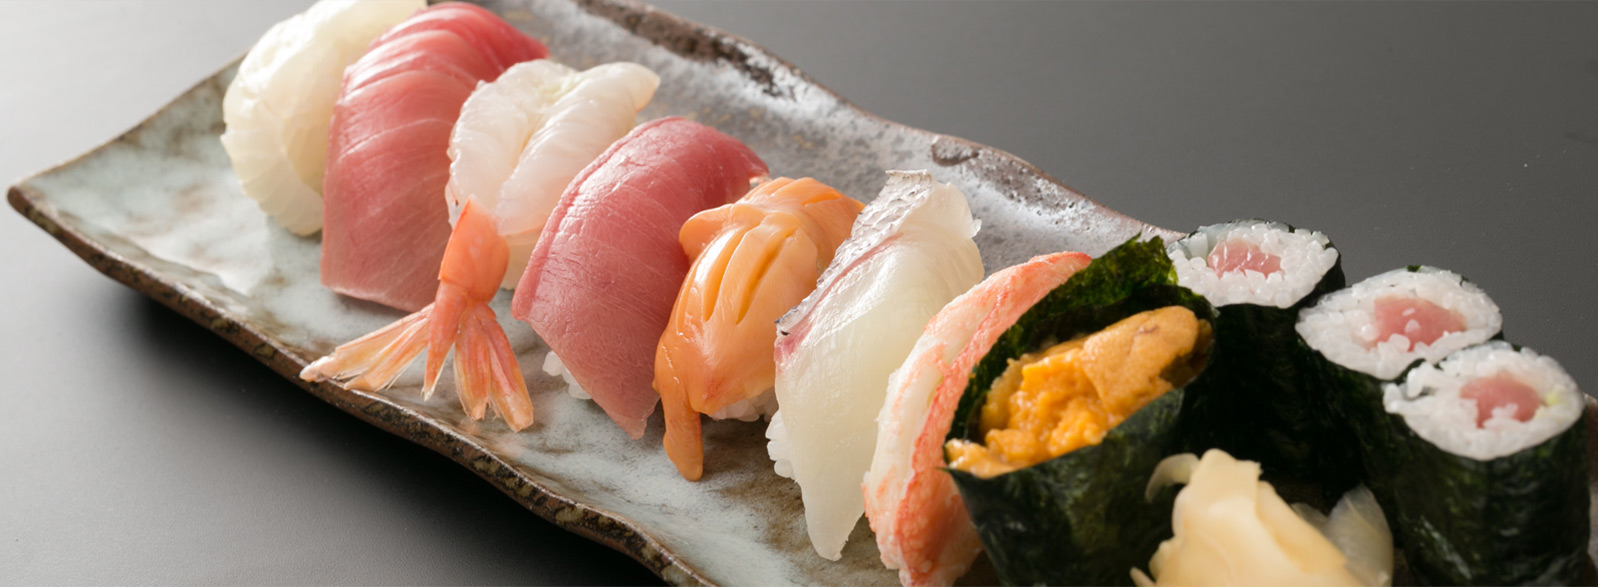 三陸直送の新鮮な魚介類を使用した「寿司」